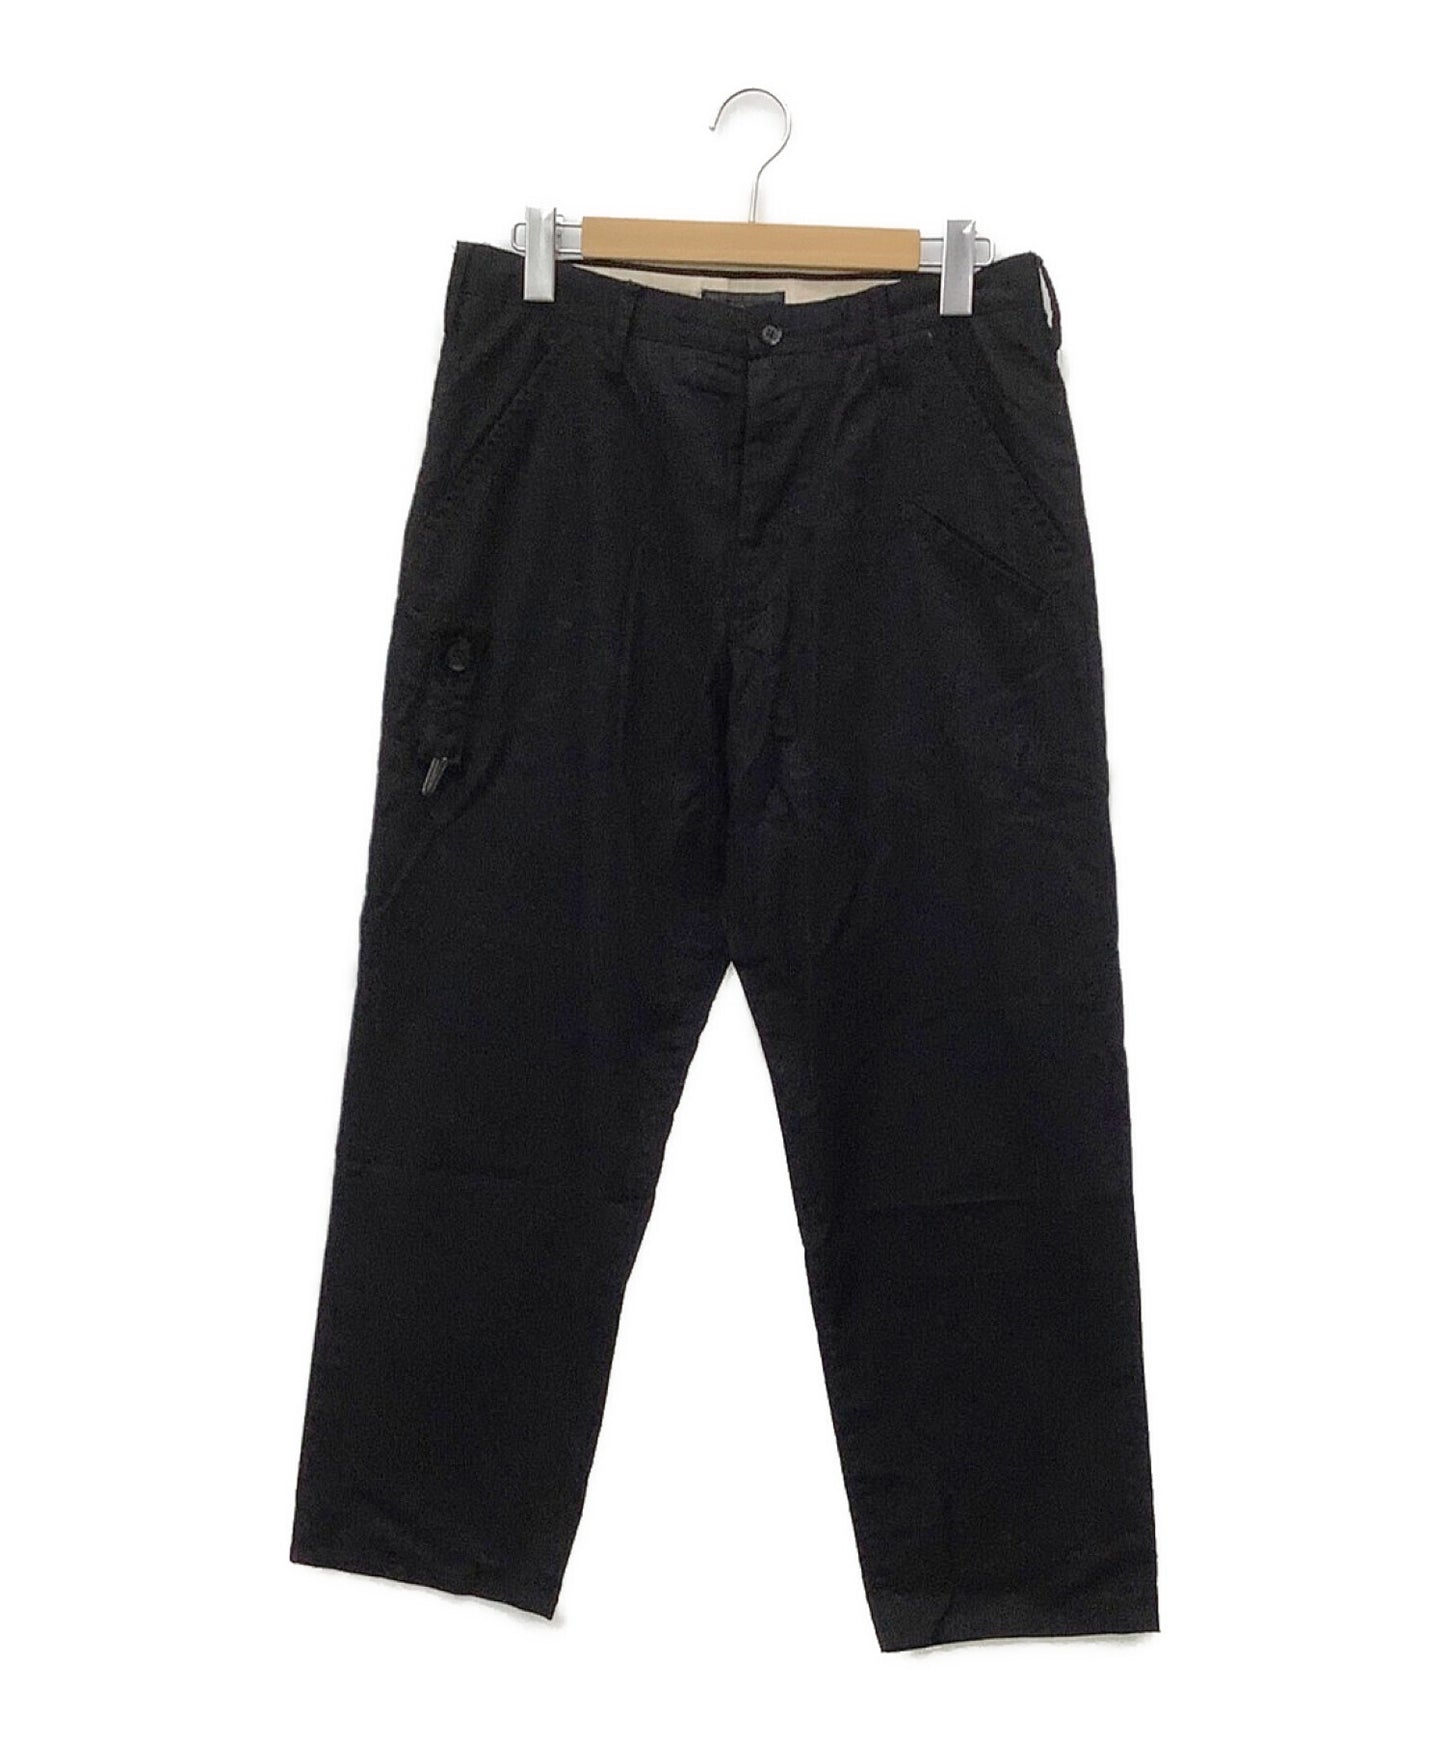 Yohji Yamamoto裤子HG-P55-040